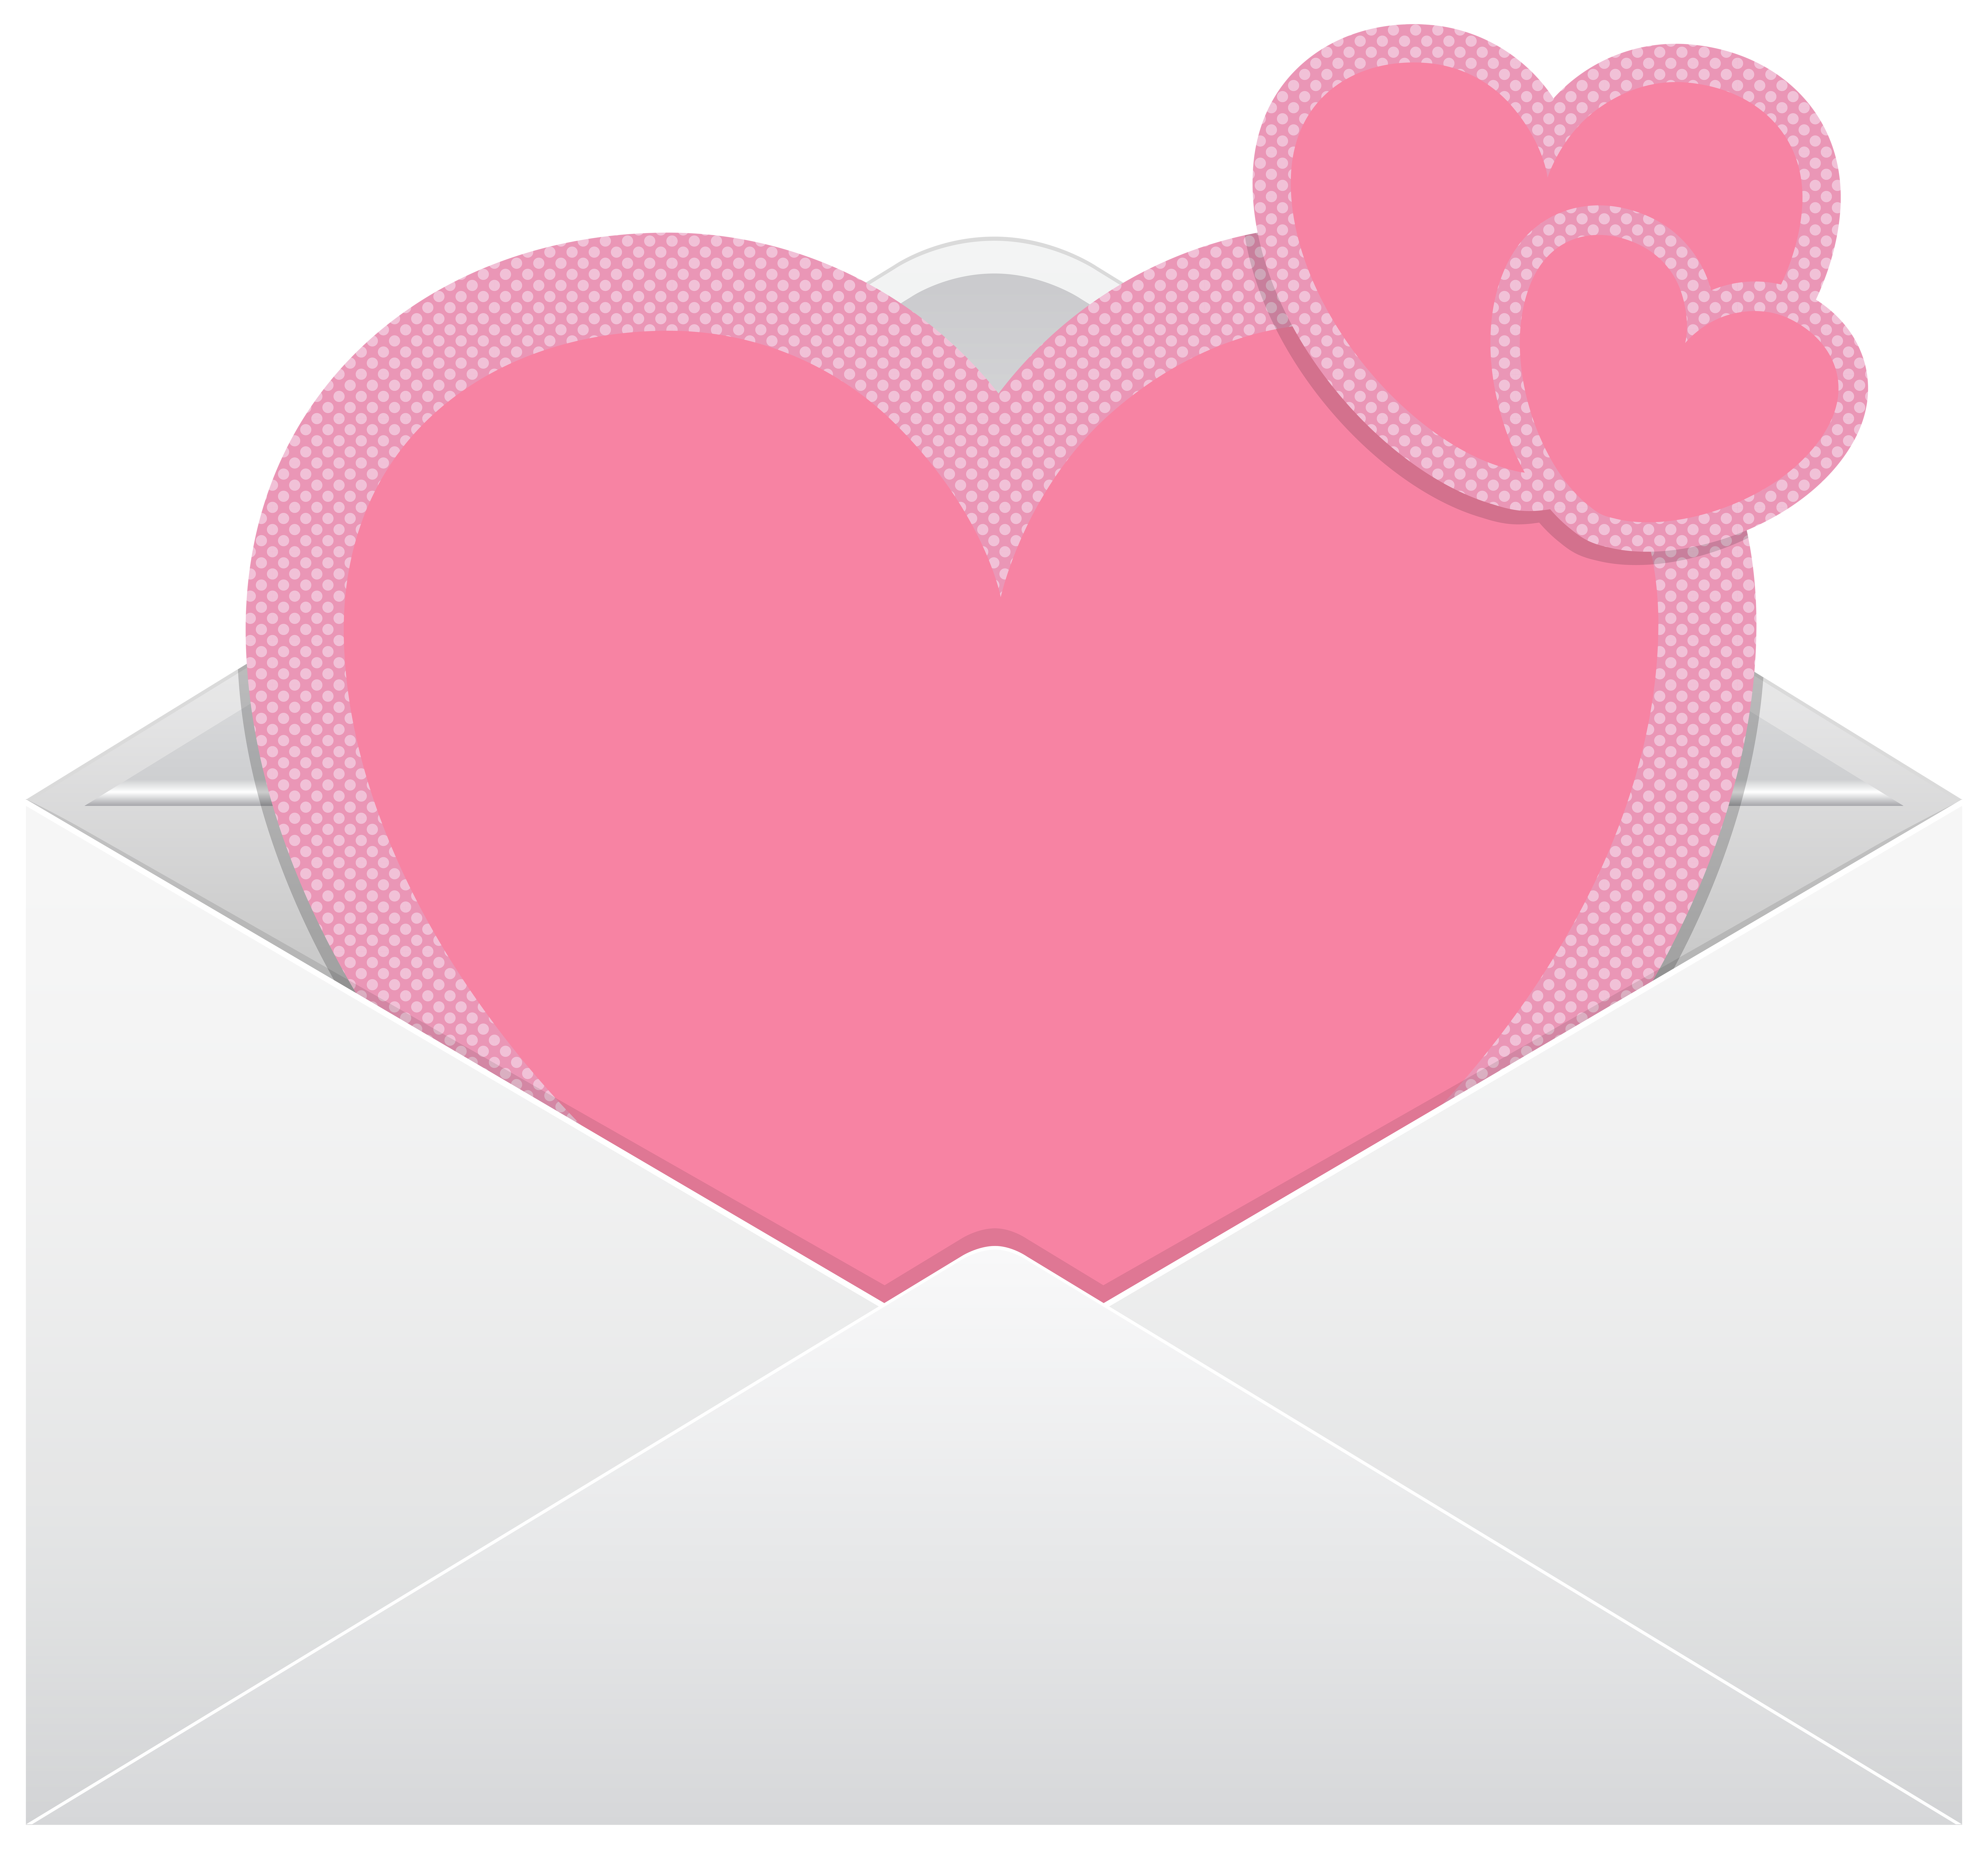 envelope clipart pink envelope